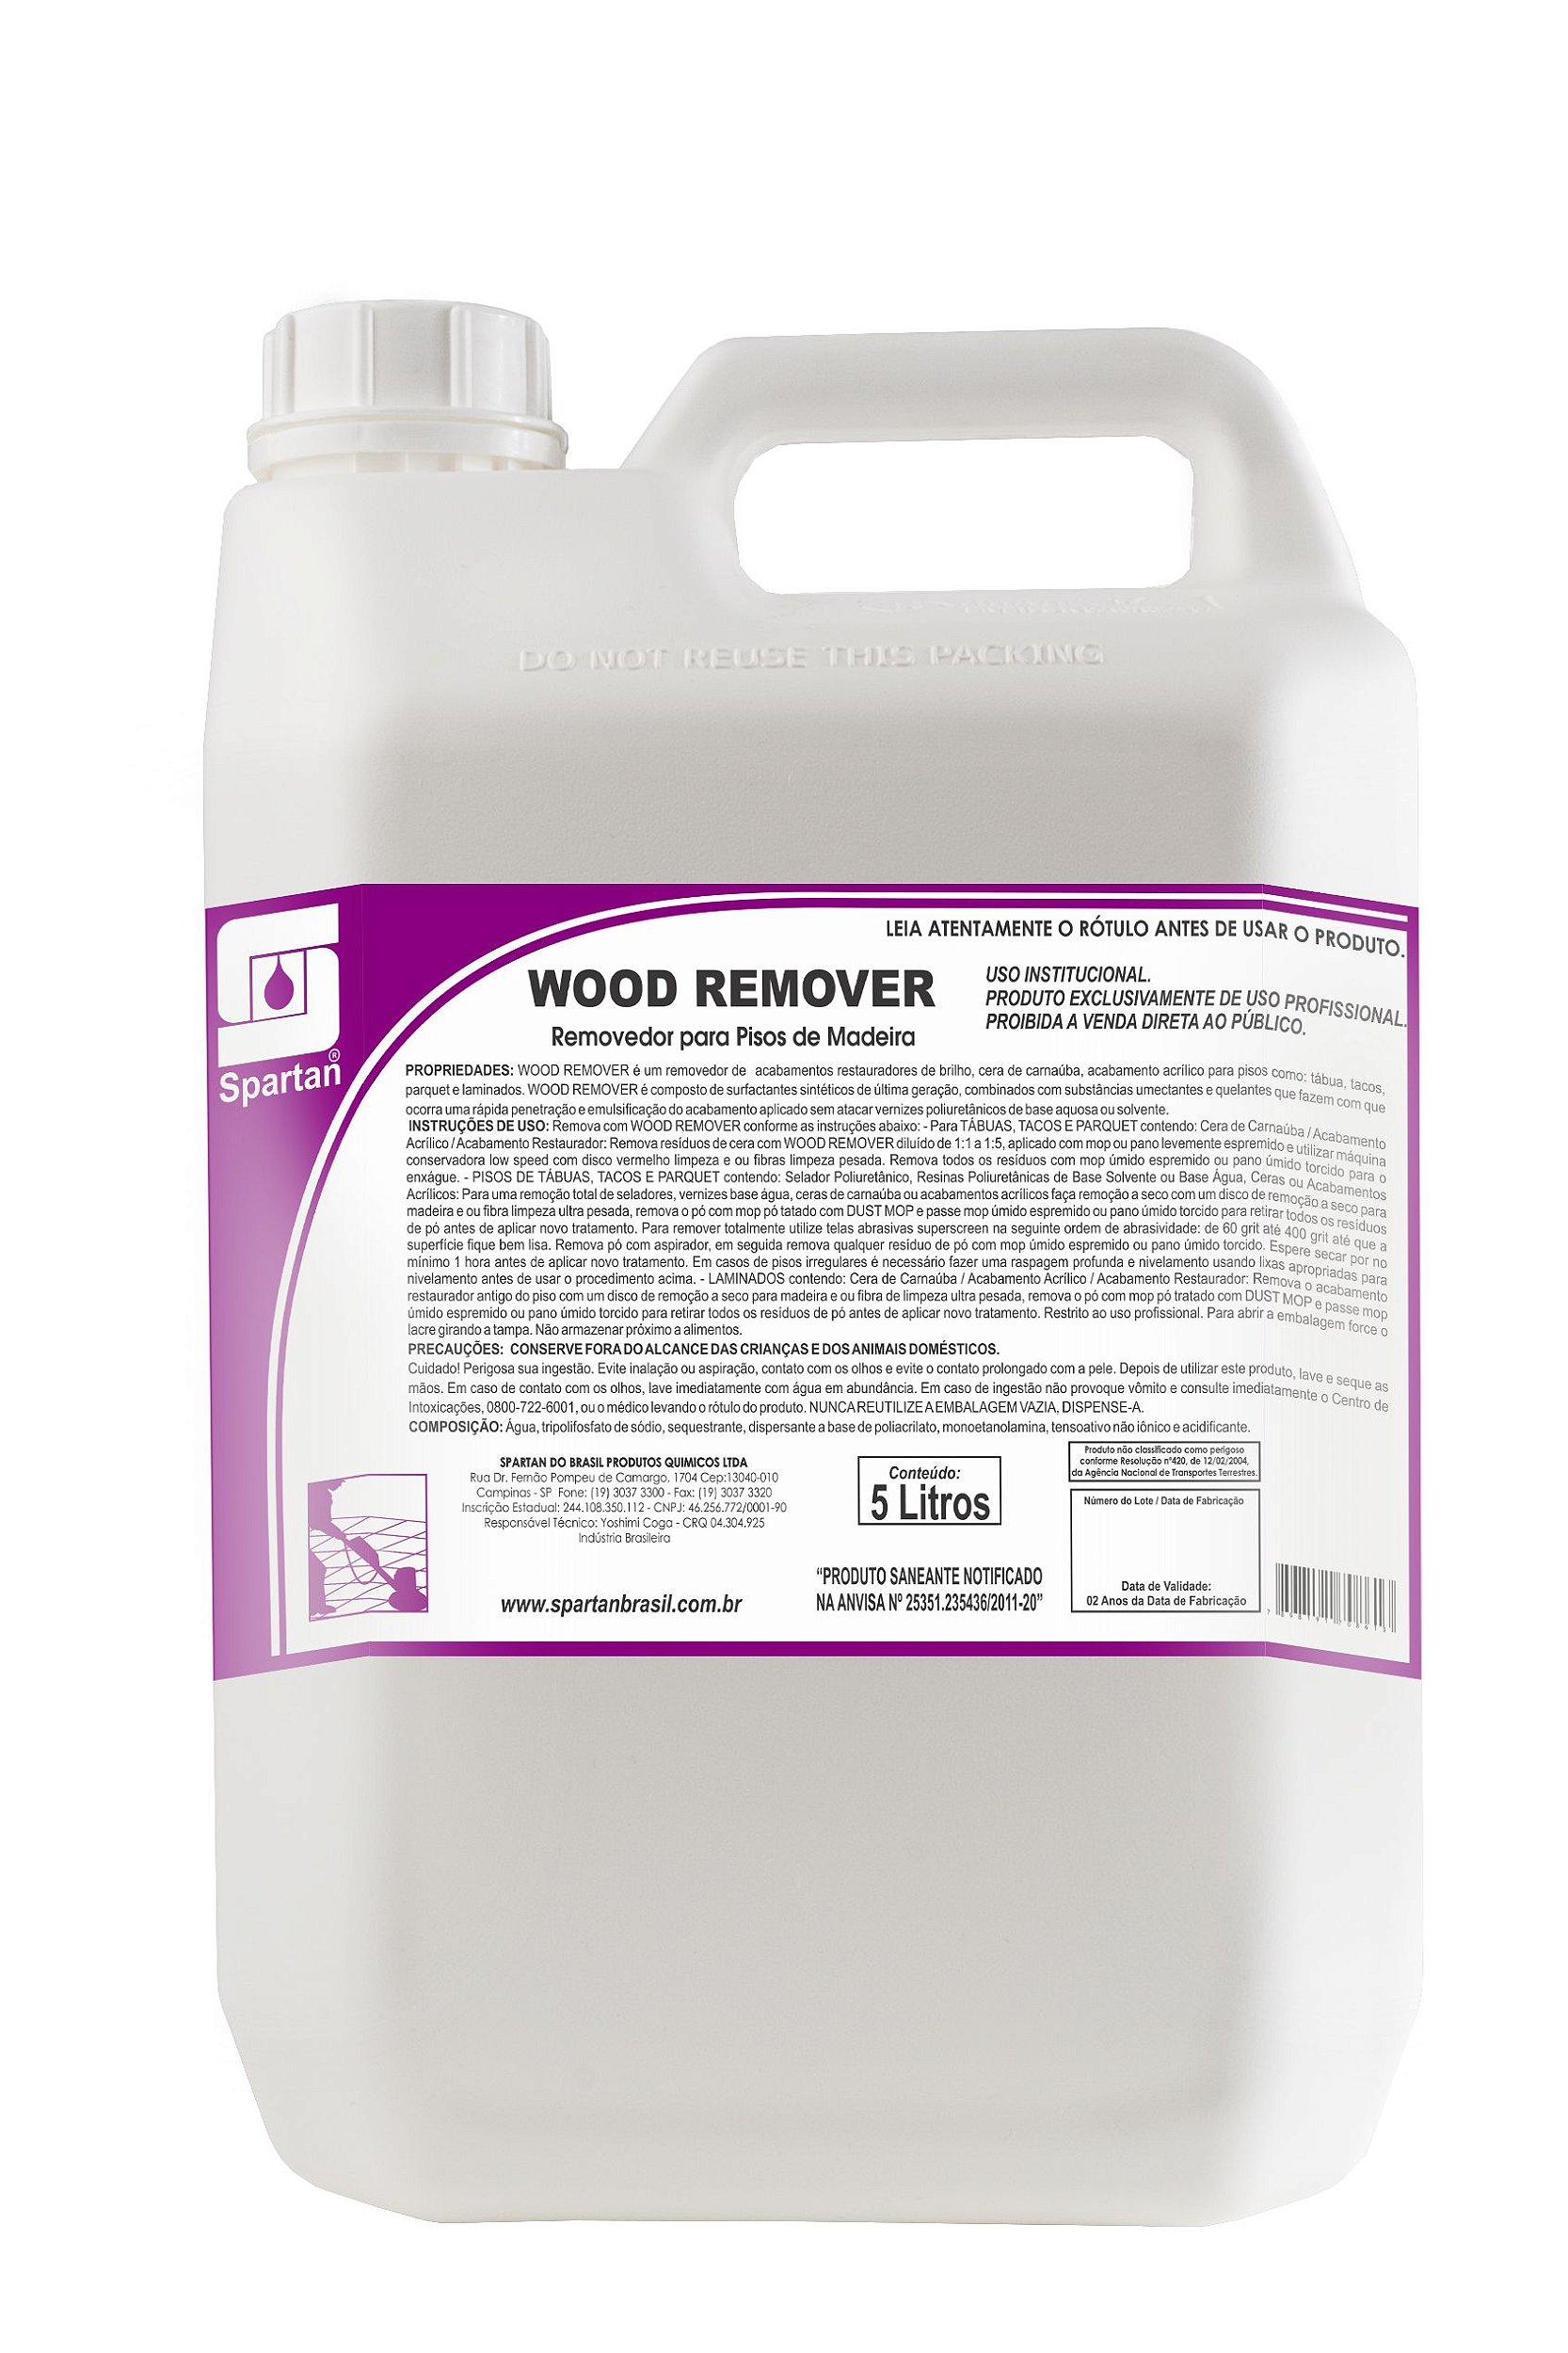 Removedor P/Pisos de Madeira Wood Remover 5 litros Spartan | Jm Imper - JM  IMPER SOLUÇÕES EM LIMPEZA